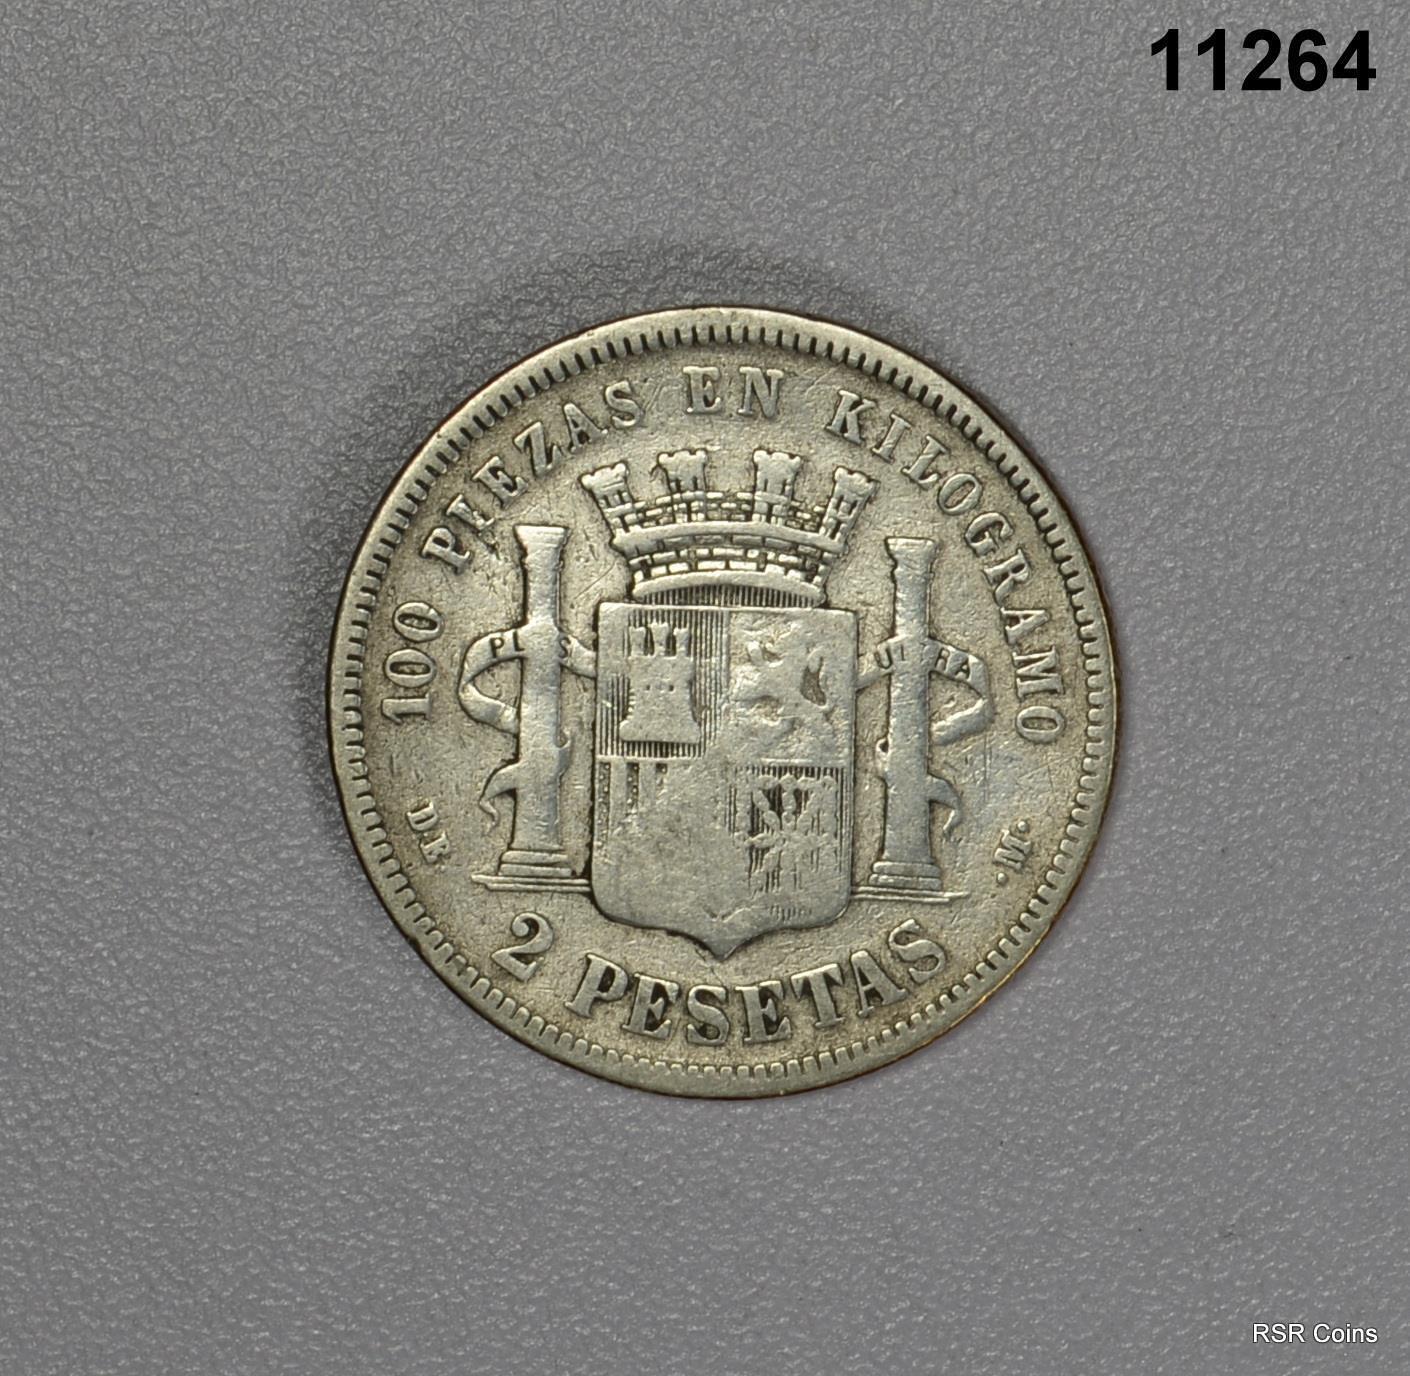 1870 SPAIN 2 PESETA SILVER SCARCE COIN! #11264